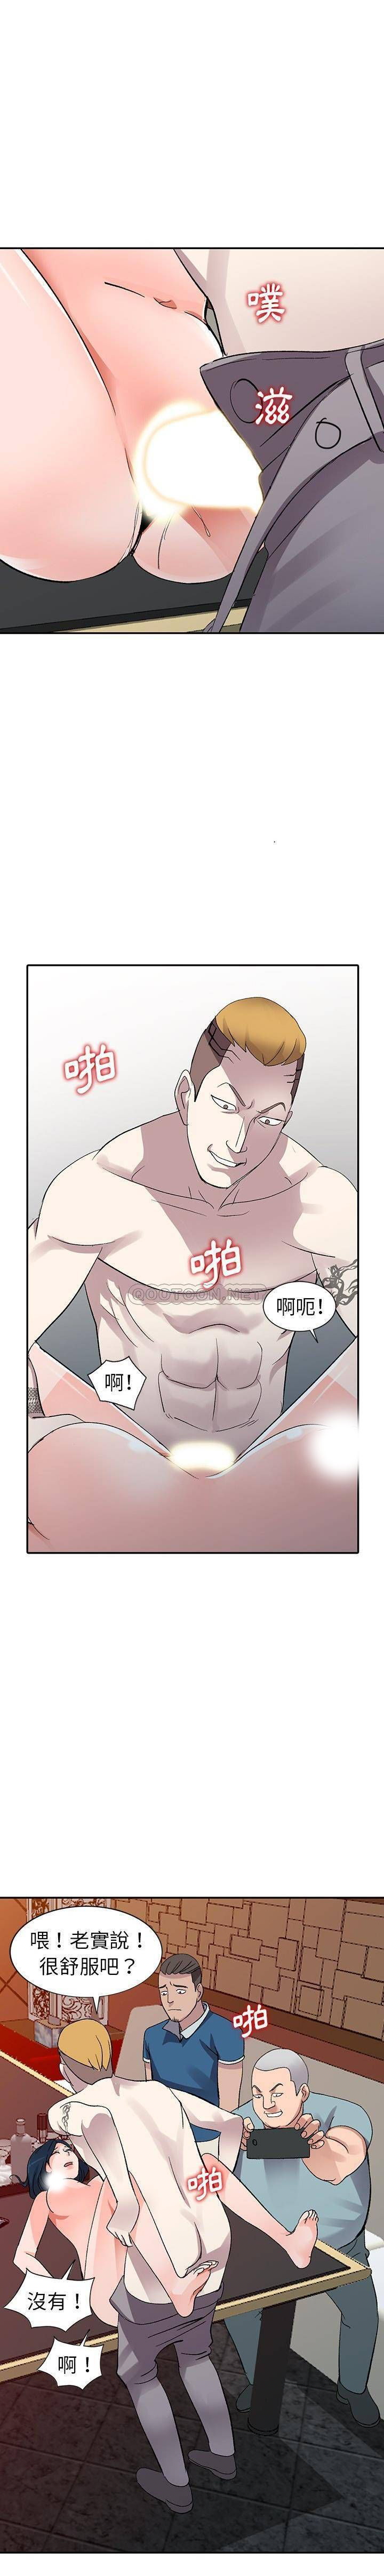 韩国污漫画 愛的第一課 第6话 13